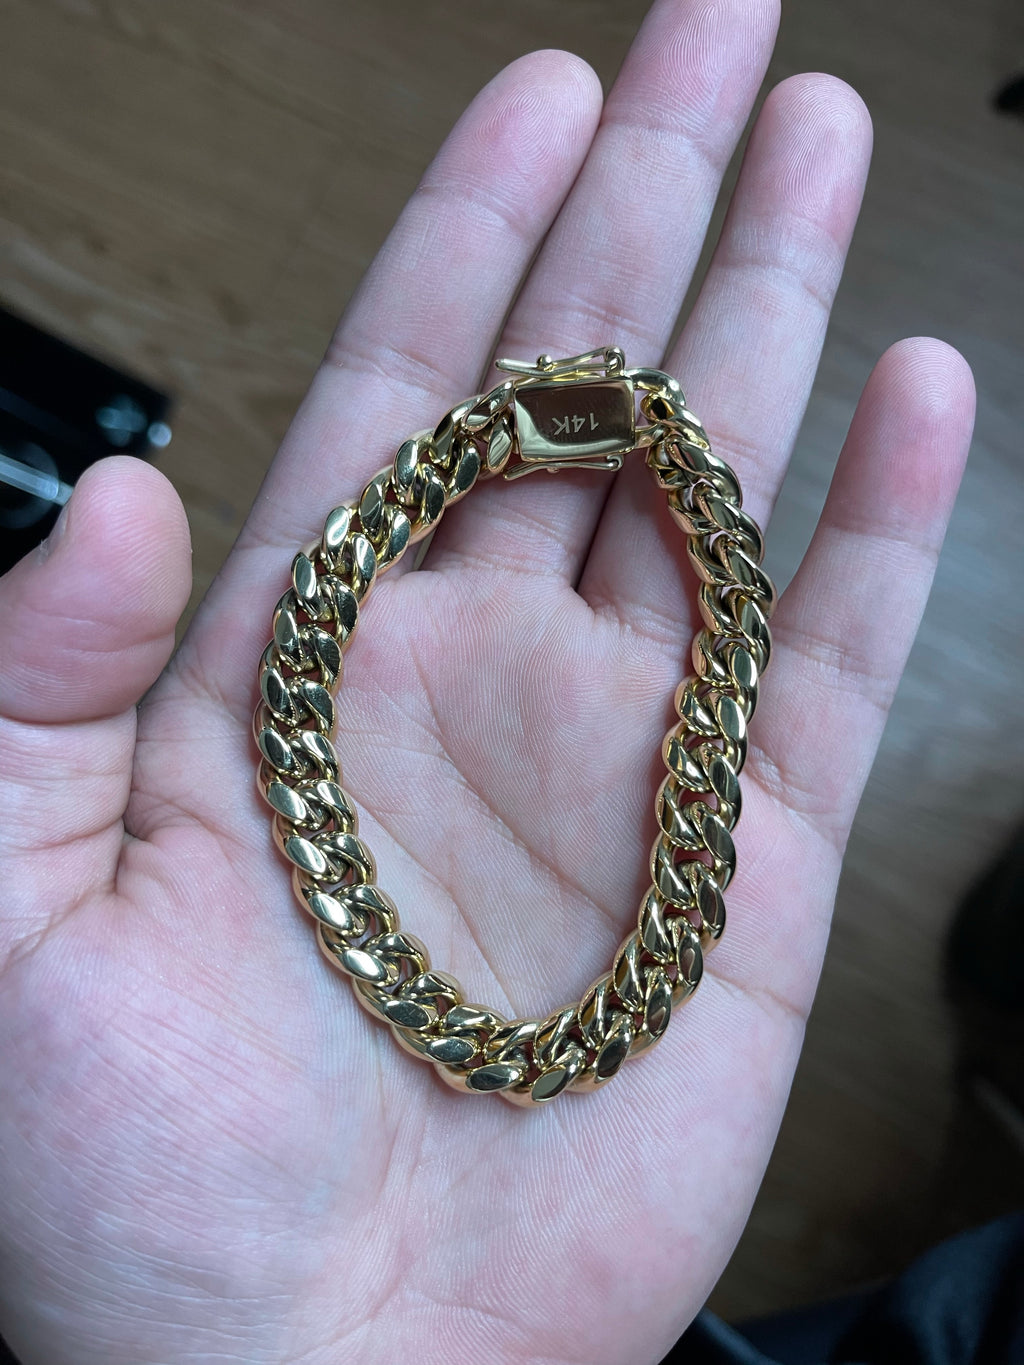 12mm bracelet size 8.5